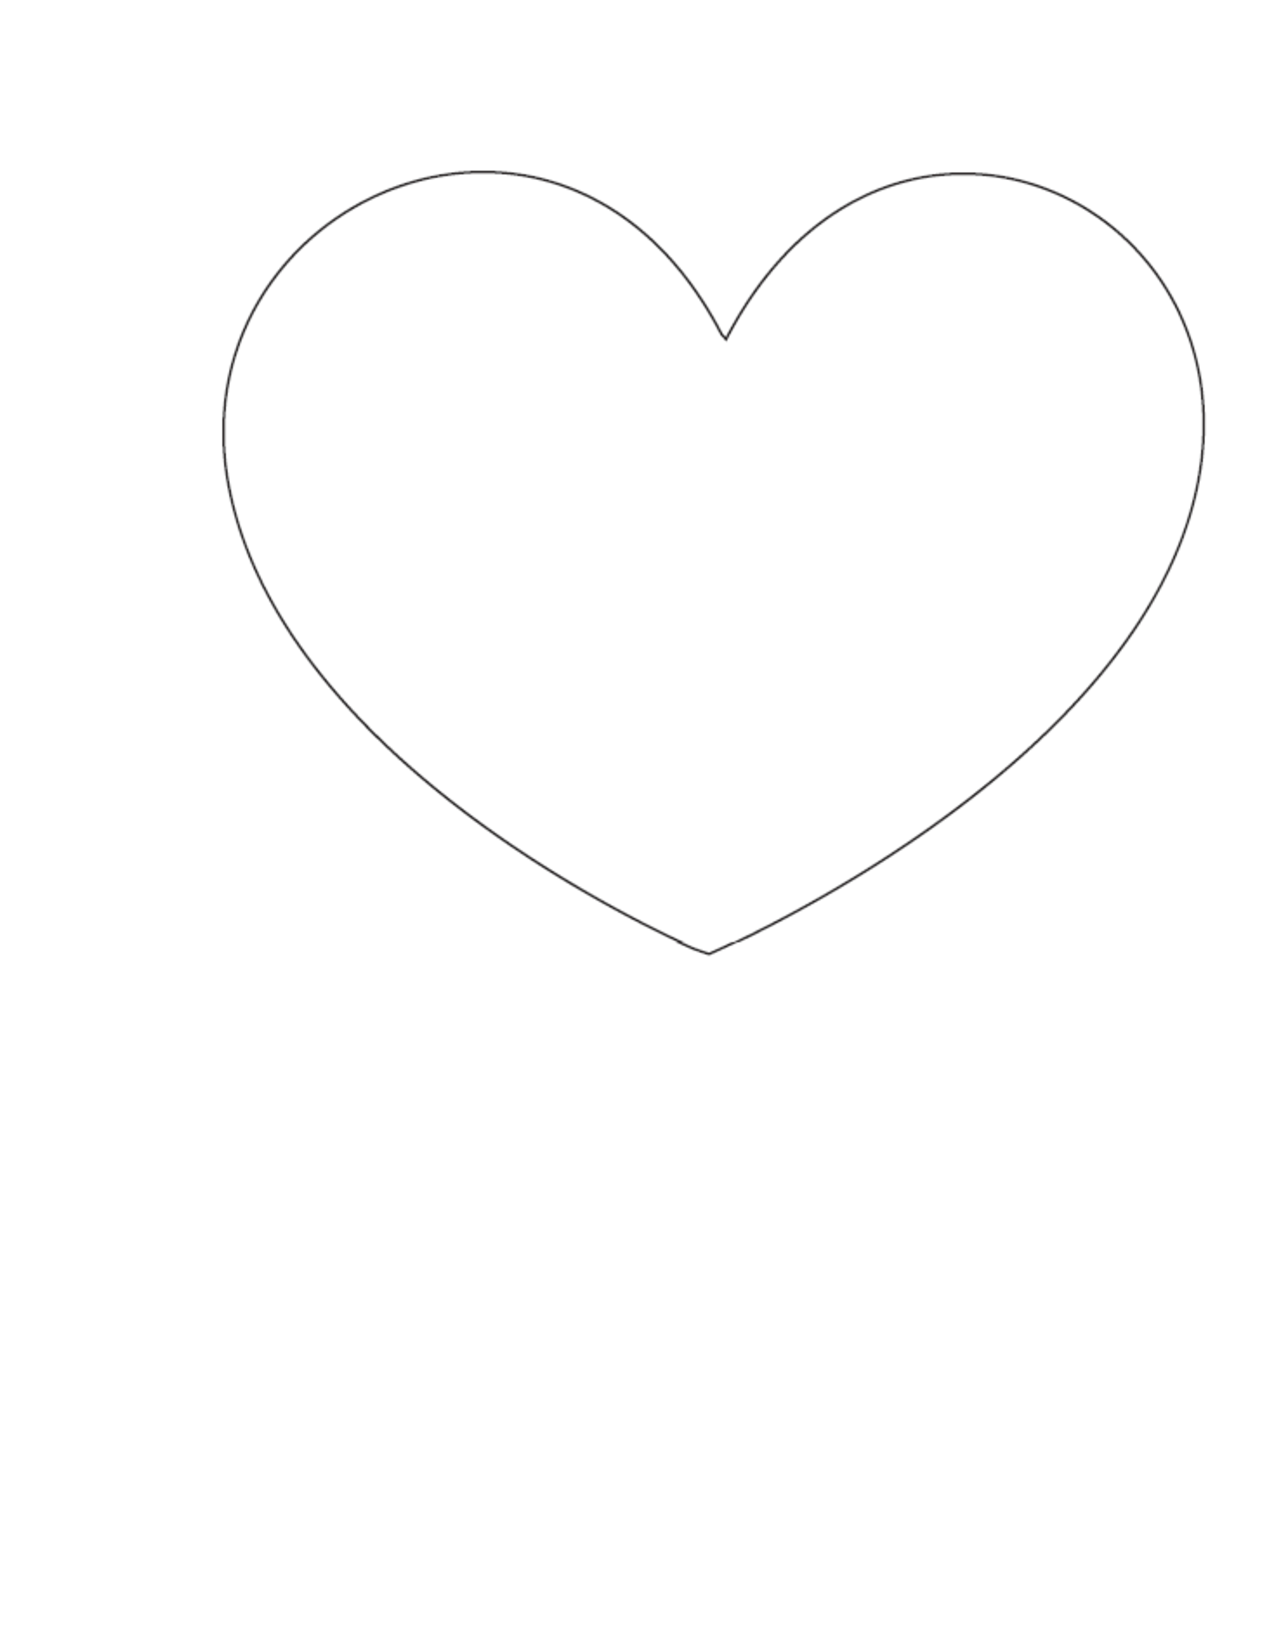 clip art heart template - photo #43